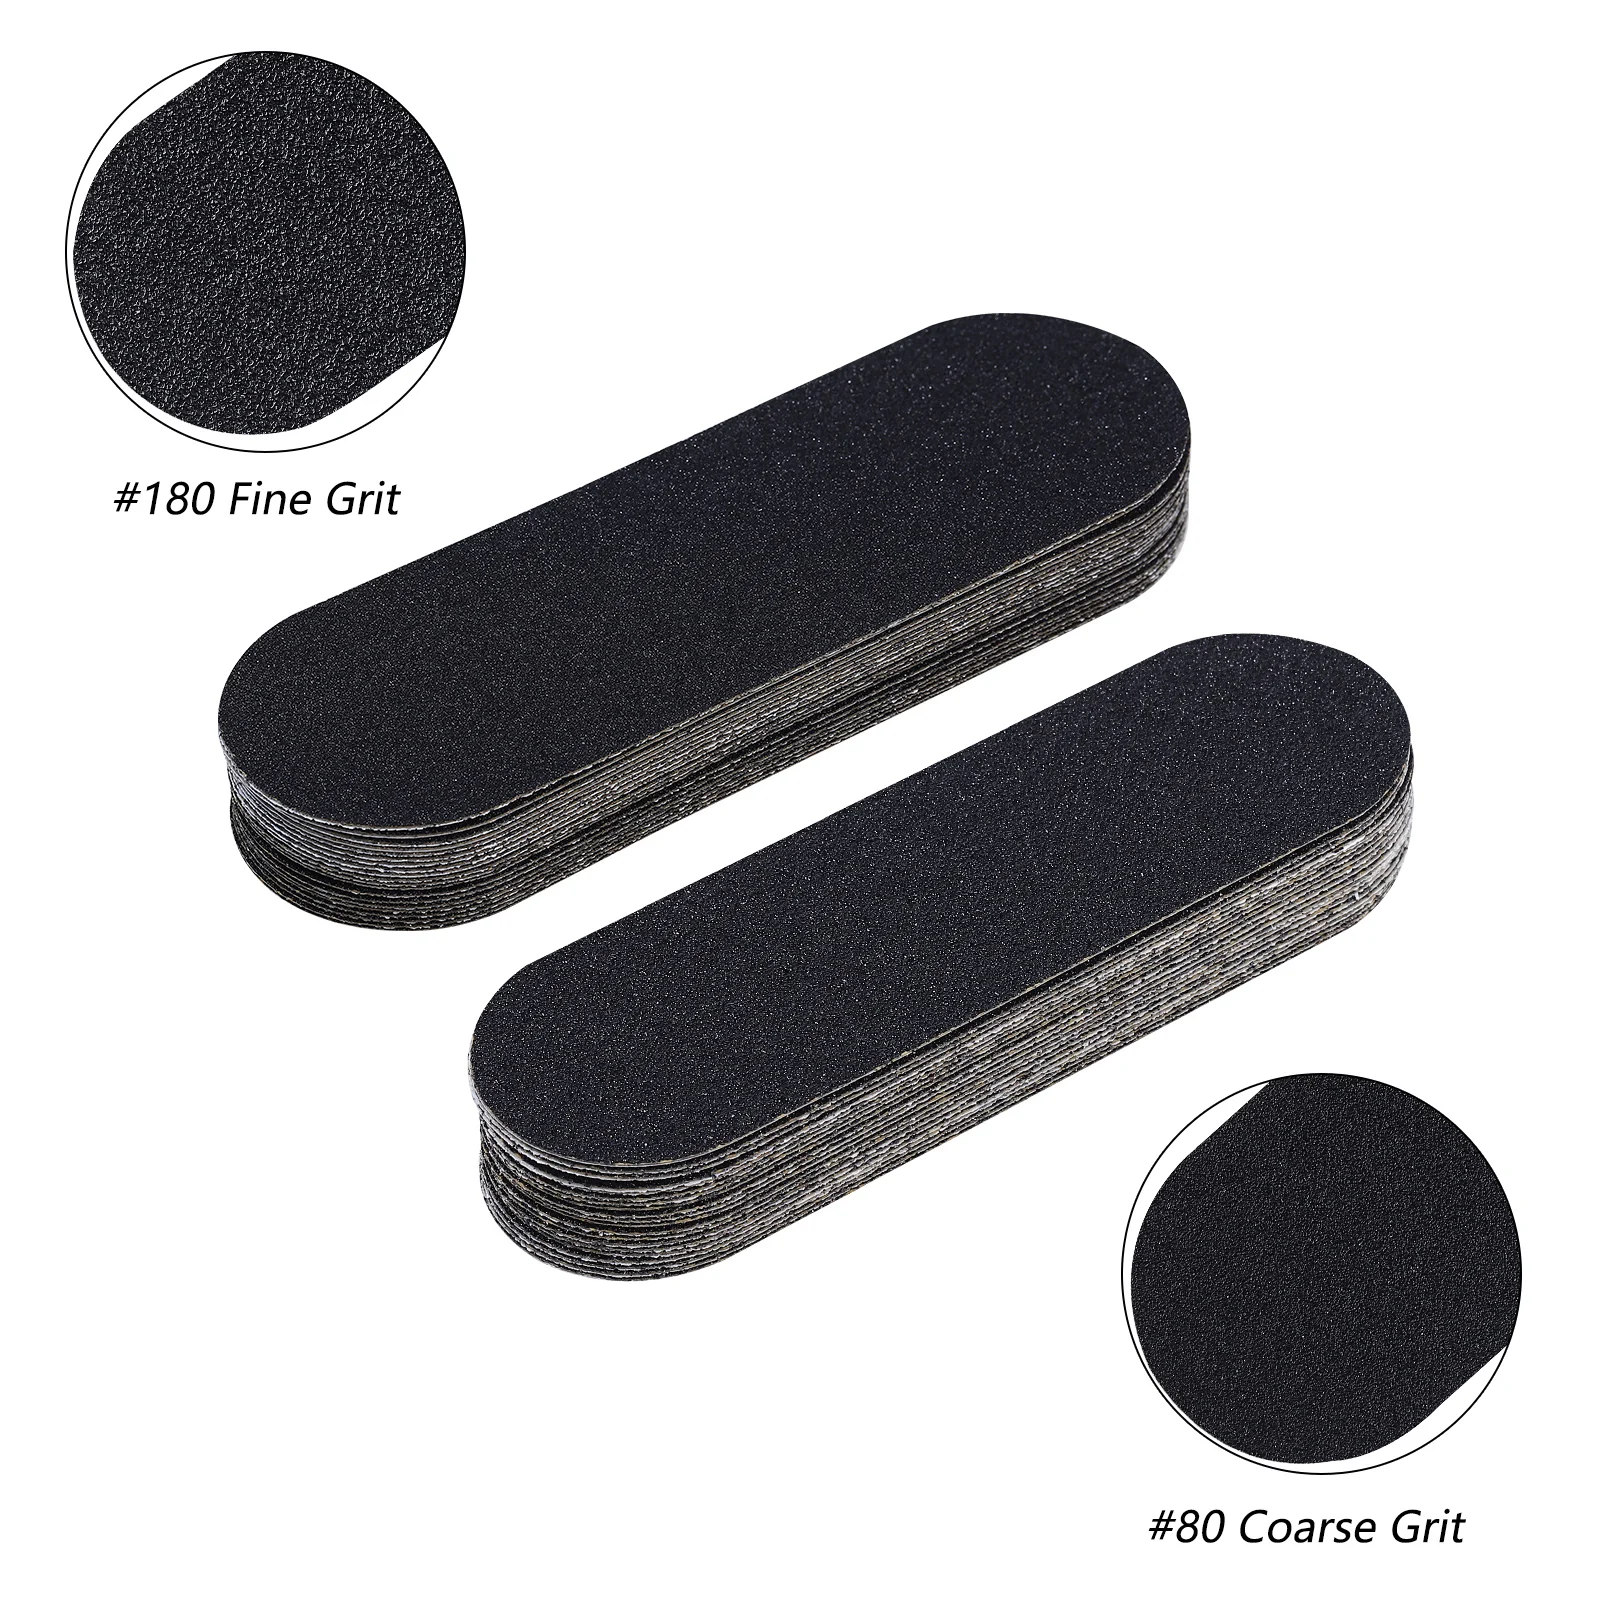 Tanio 1 zestaw pilnik Foot-Rasp wymień 80/180 Grit szlifowanie-Cloth pliki